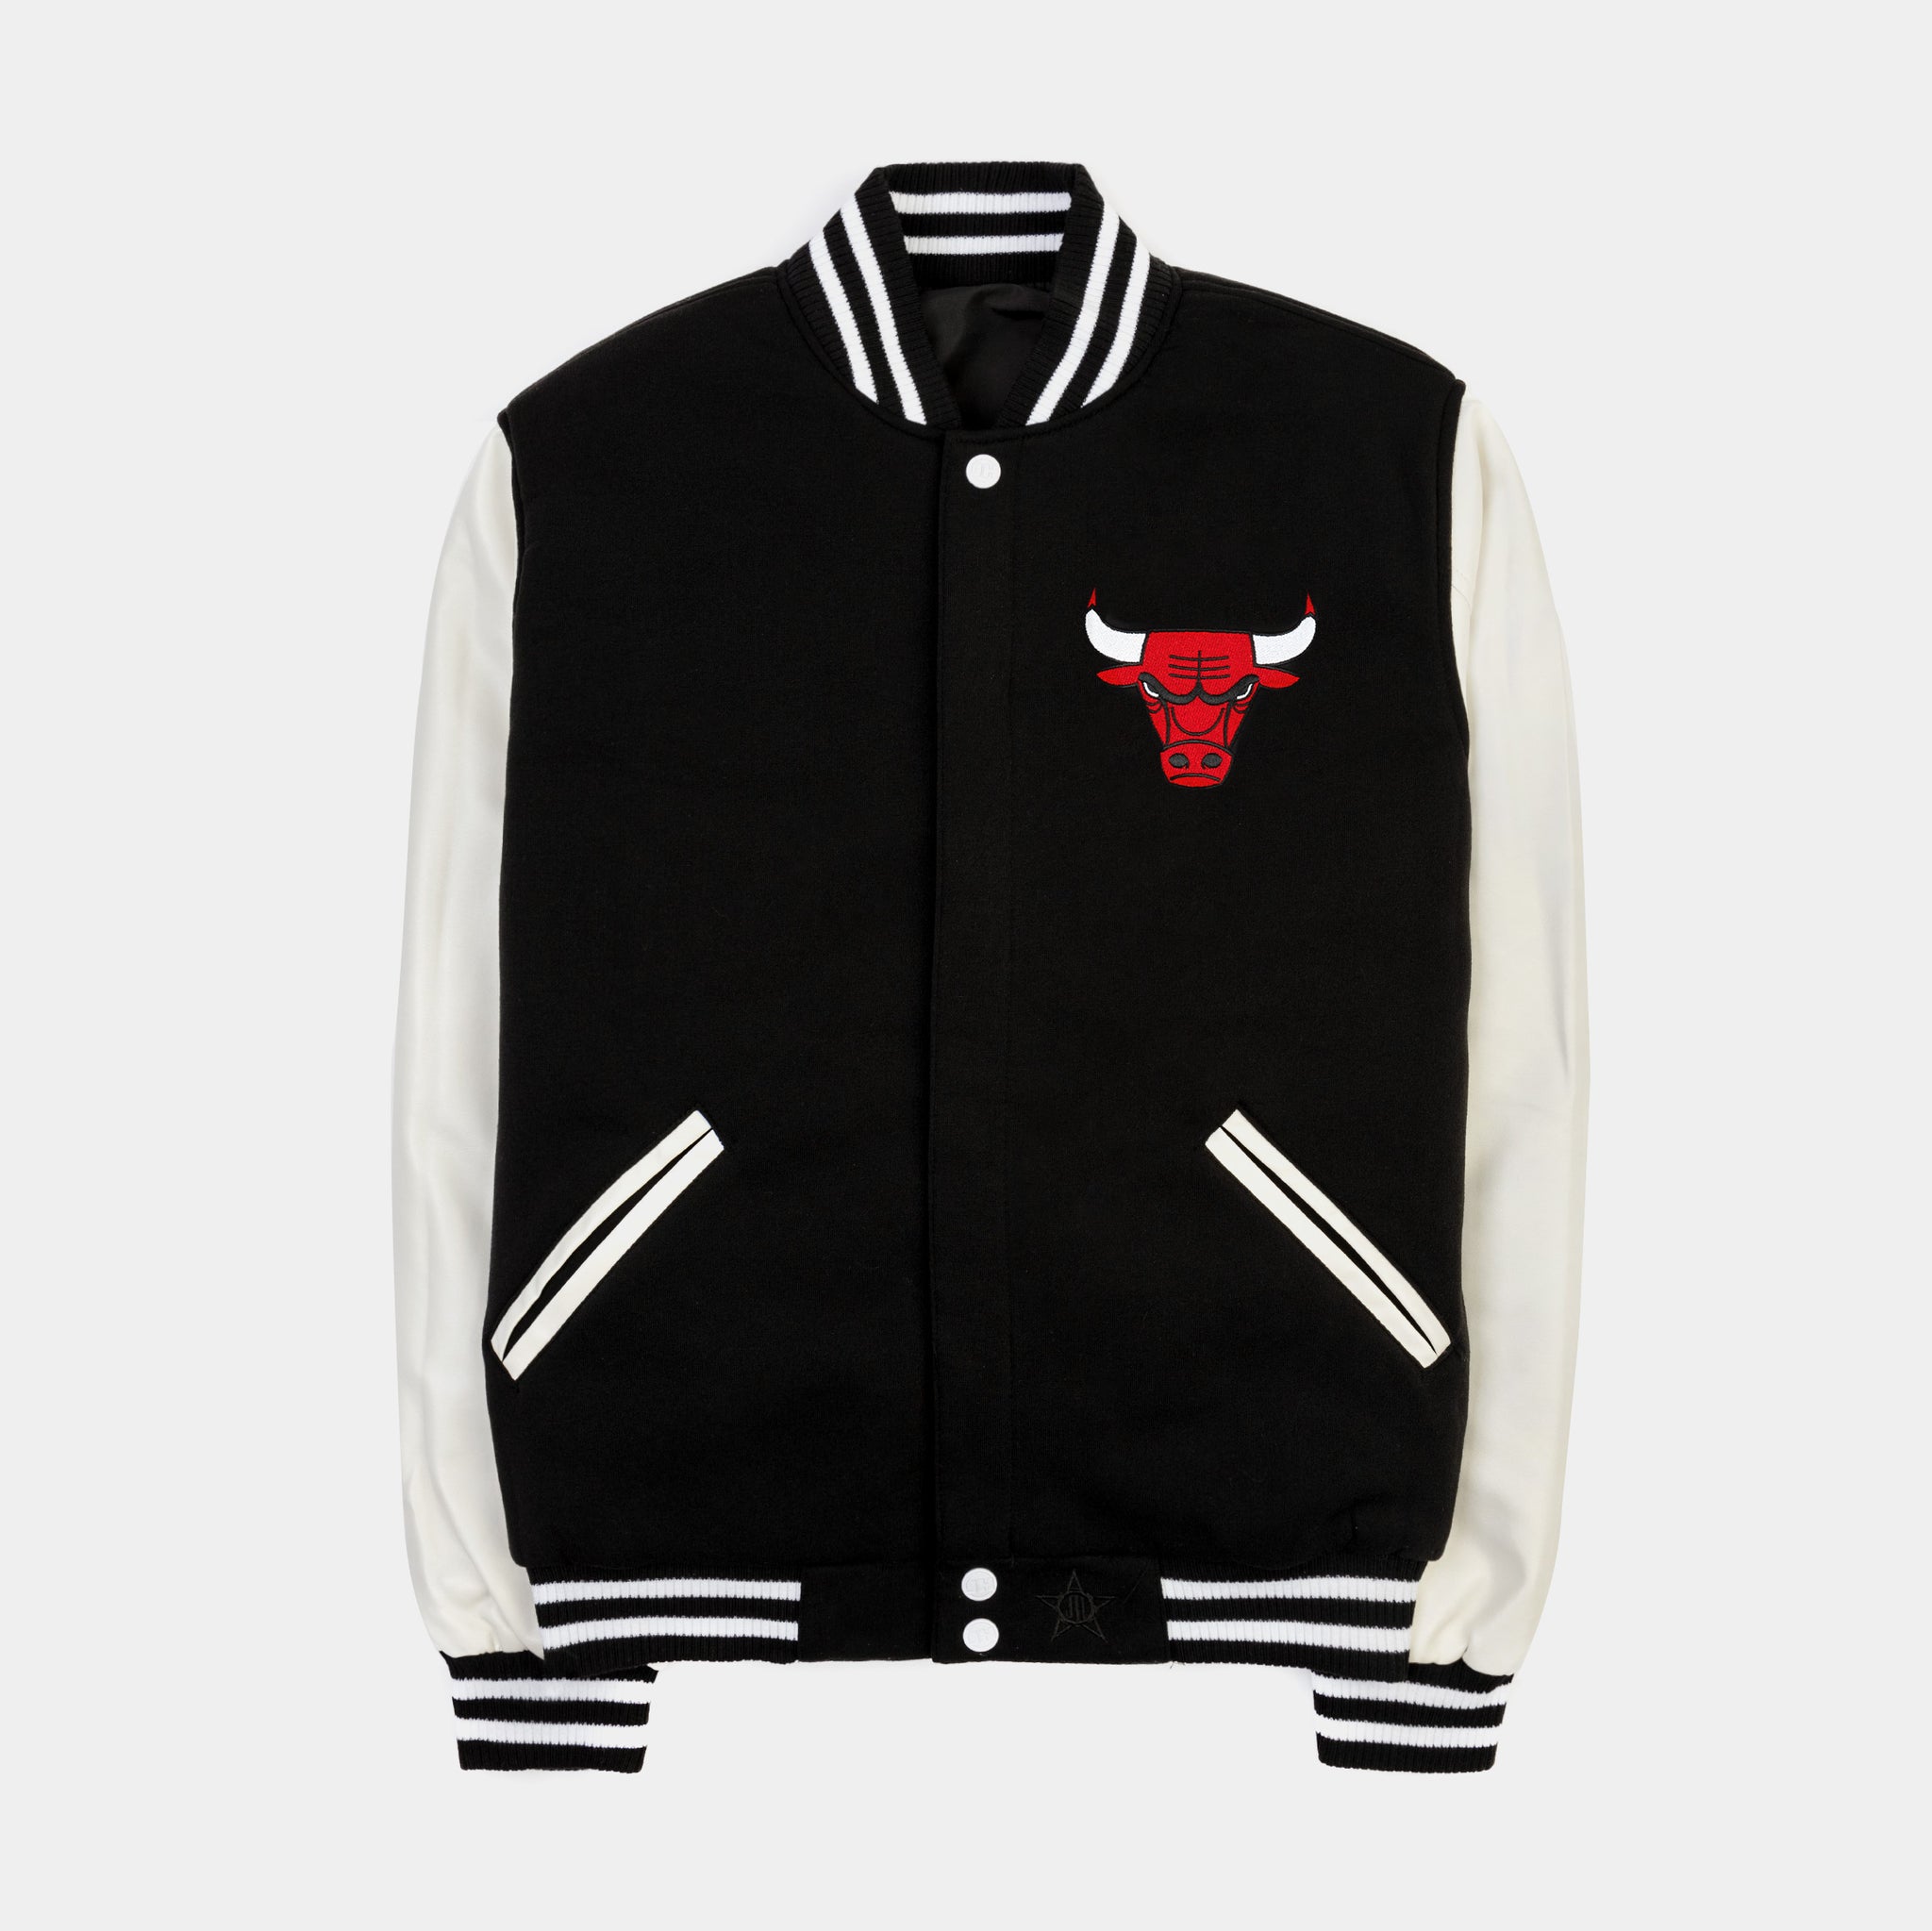 JH Design Men's Chicago Bulls Black Varsity Jacket